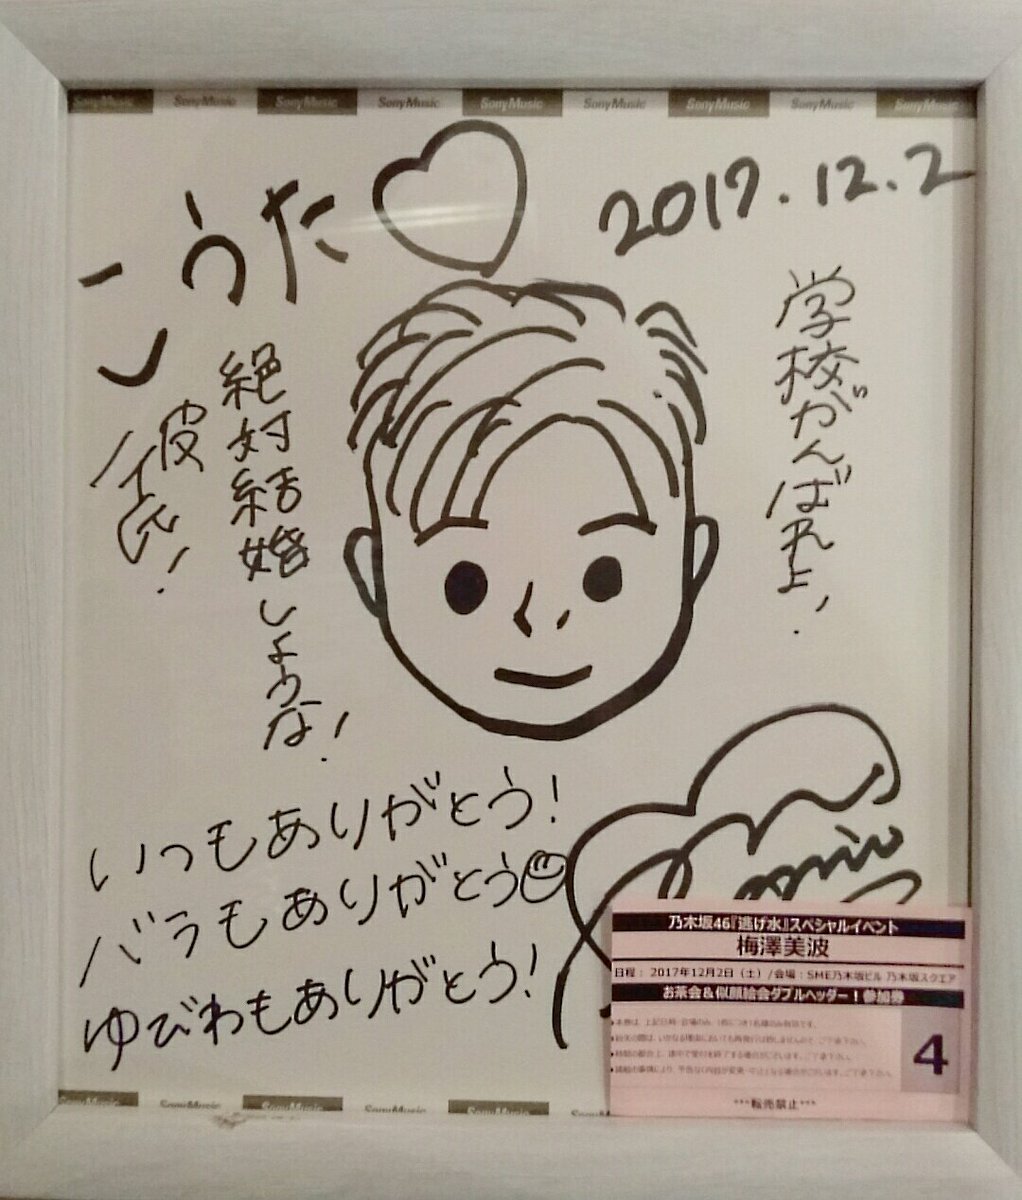 ファンイベント「似顔絵会」で梅澤美波ちゃんが描いた似顔絵とメッセージ